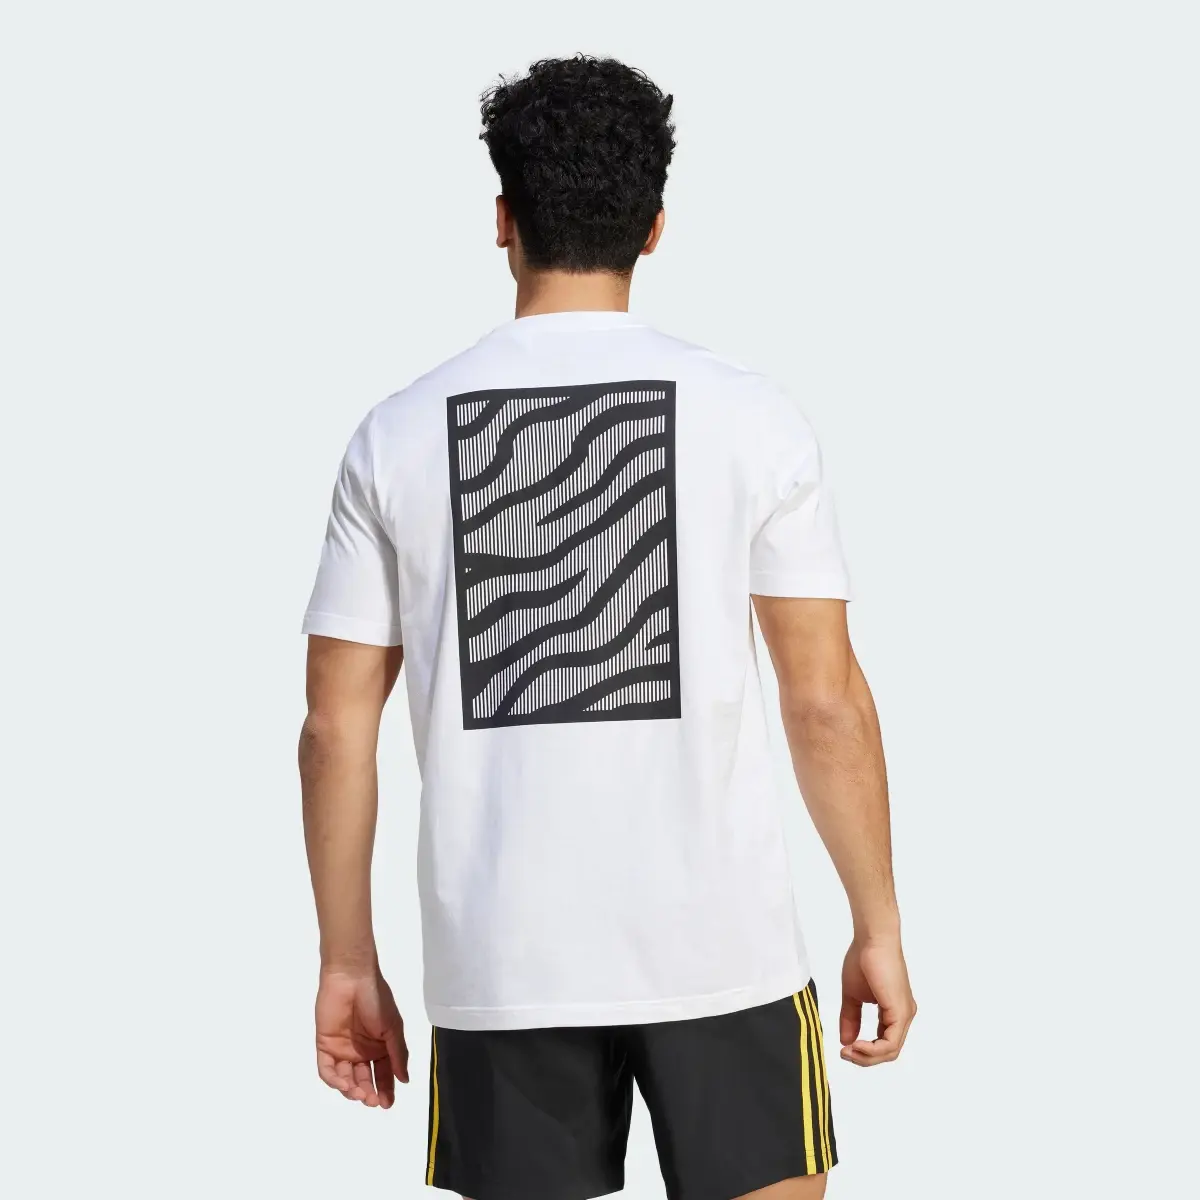 Adidas T-shirt DNA da Juventus. 3